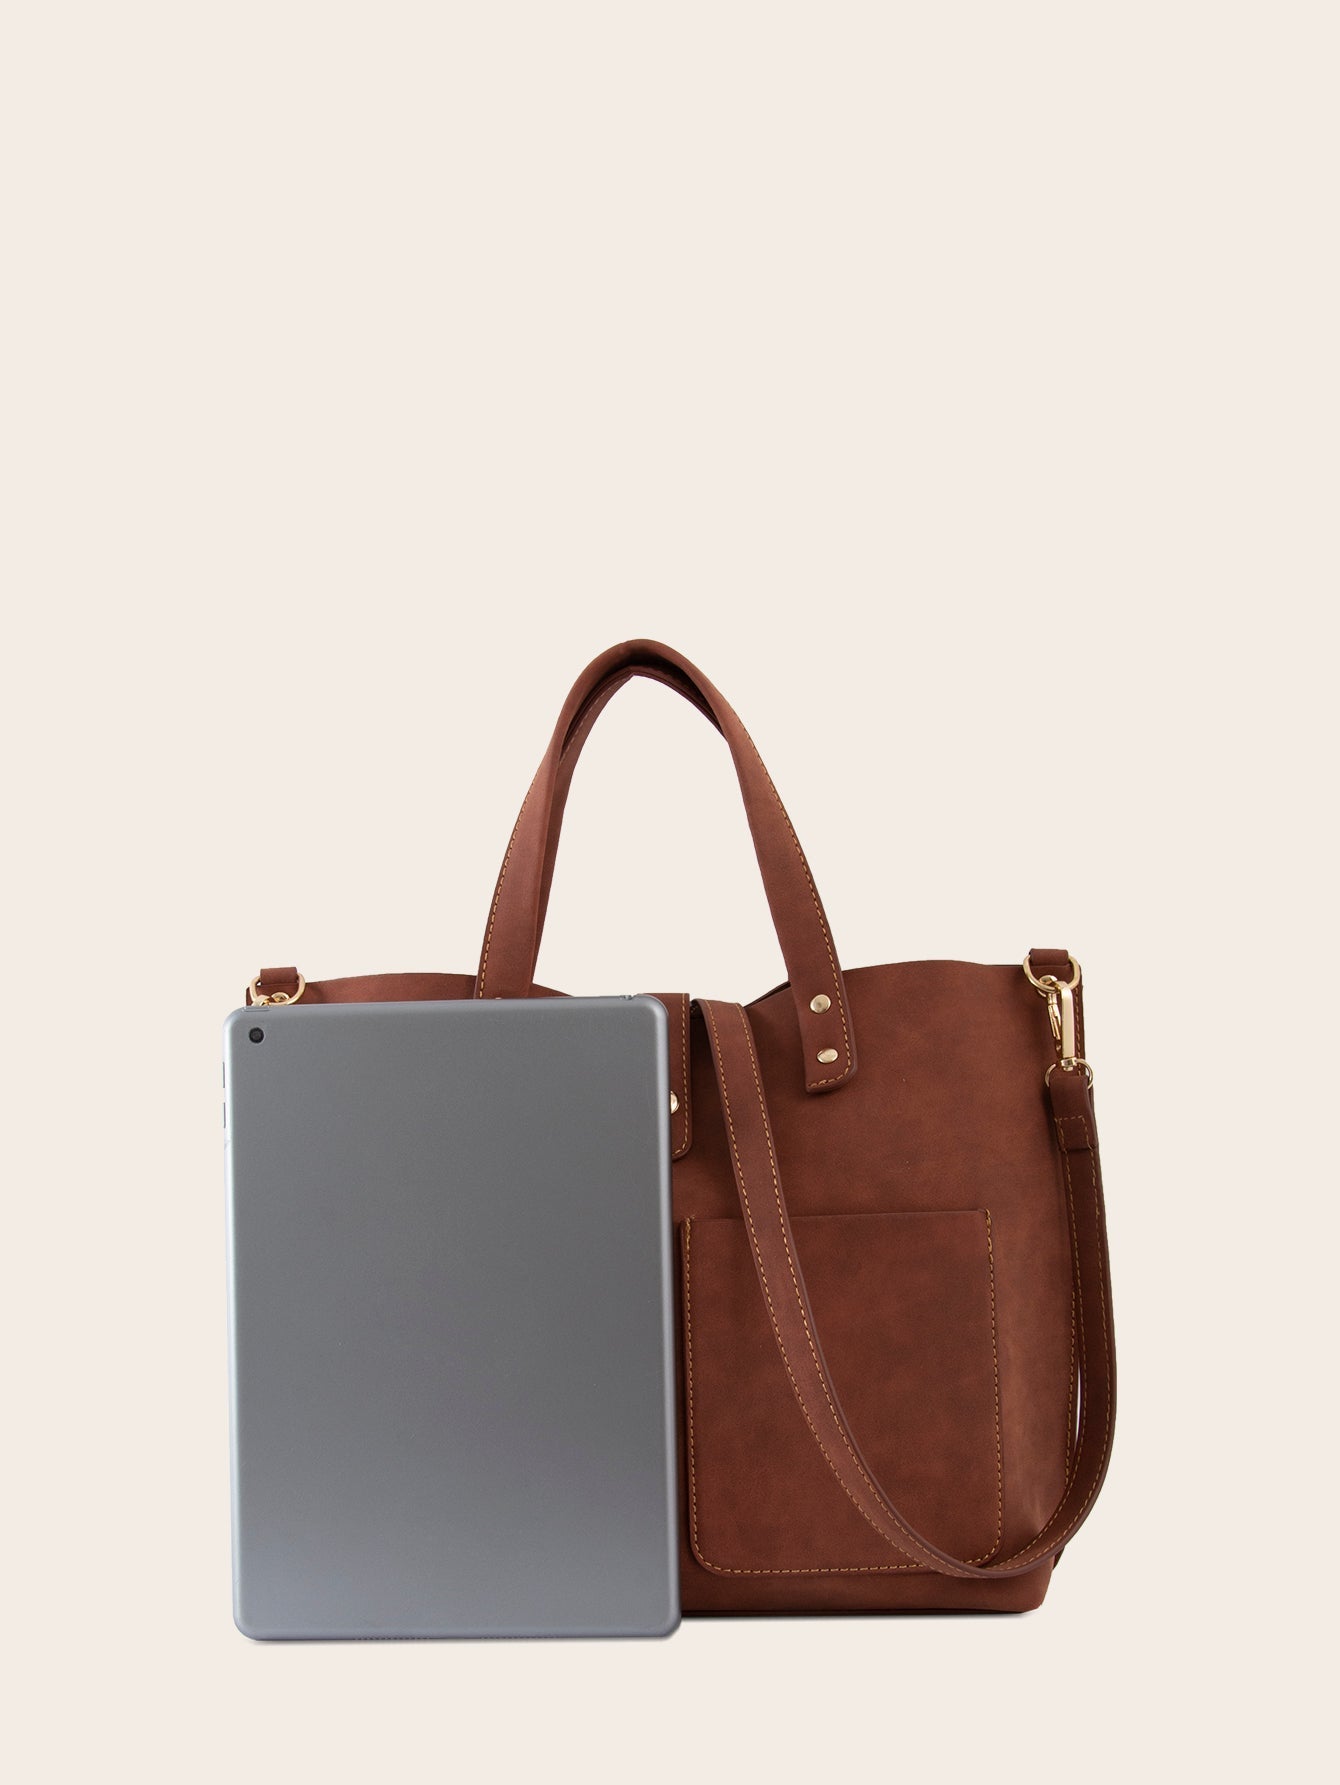 Women Large Capacity Handbags Simple Shoulder Bag Sai Feel